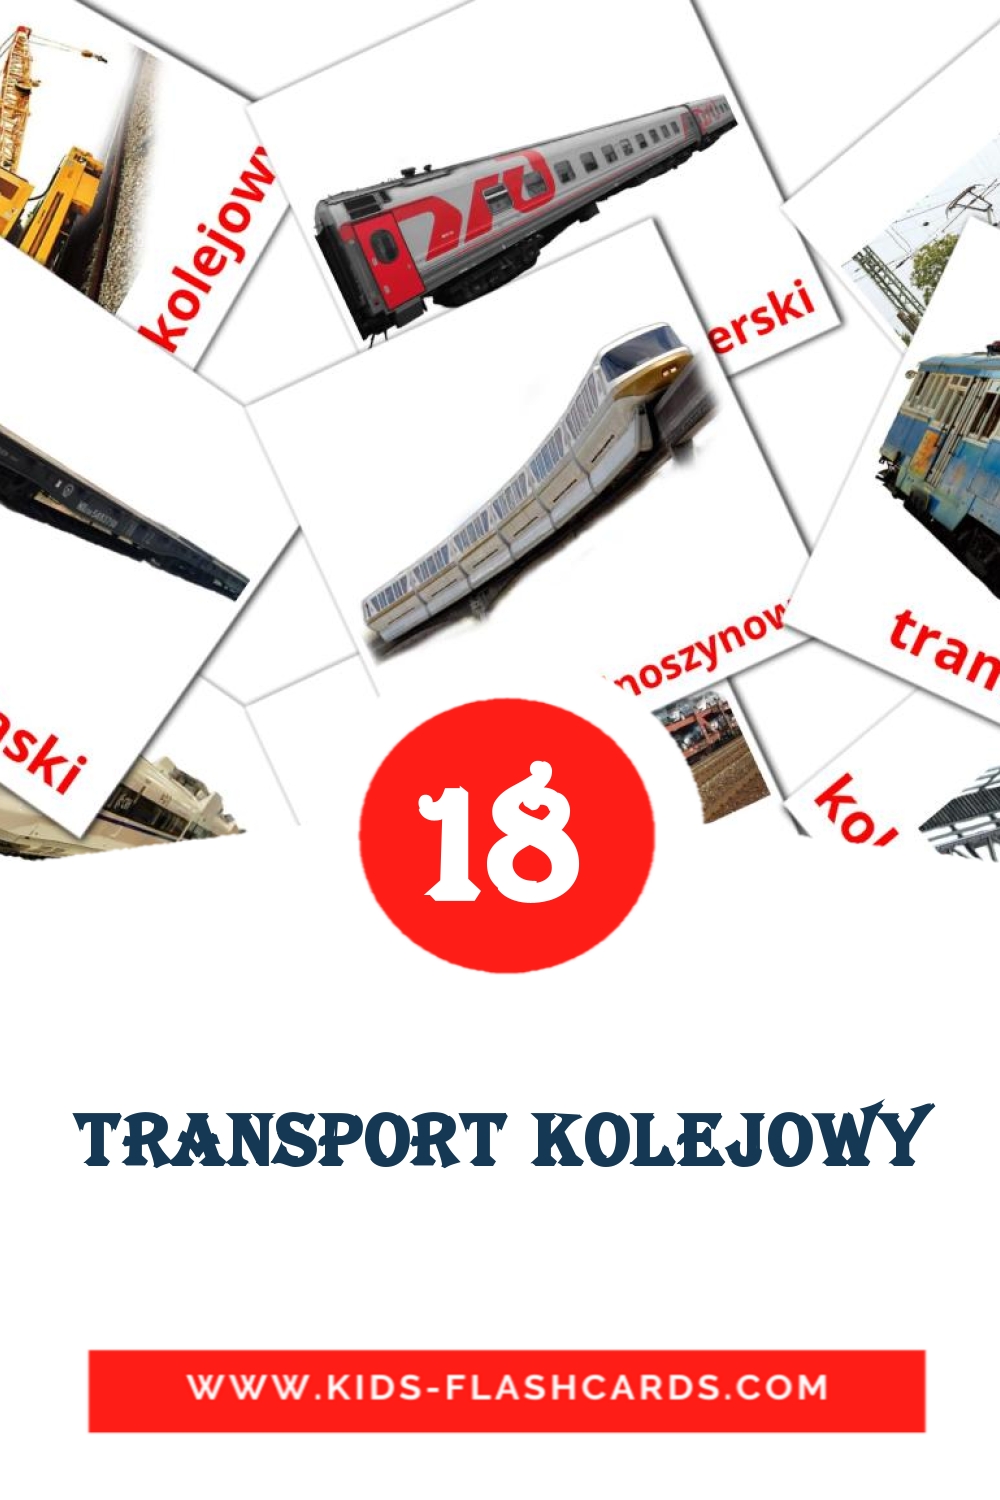 Transport kolejowy на польском для Детского Сада (18 карточек)